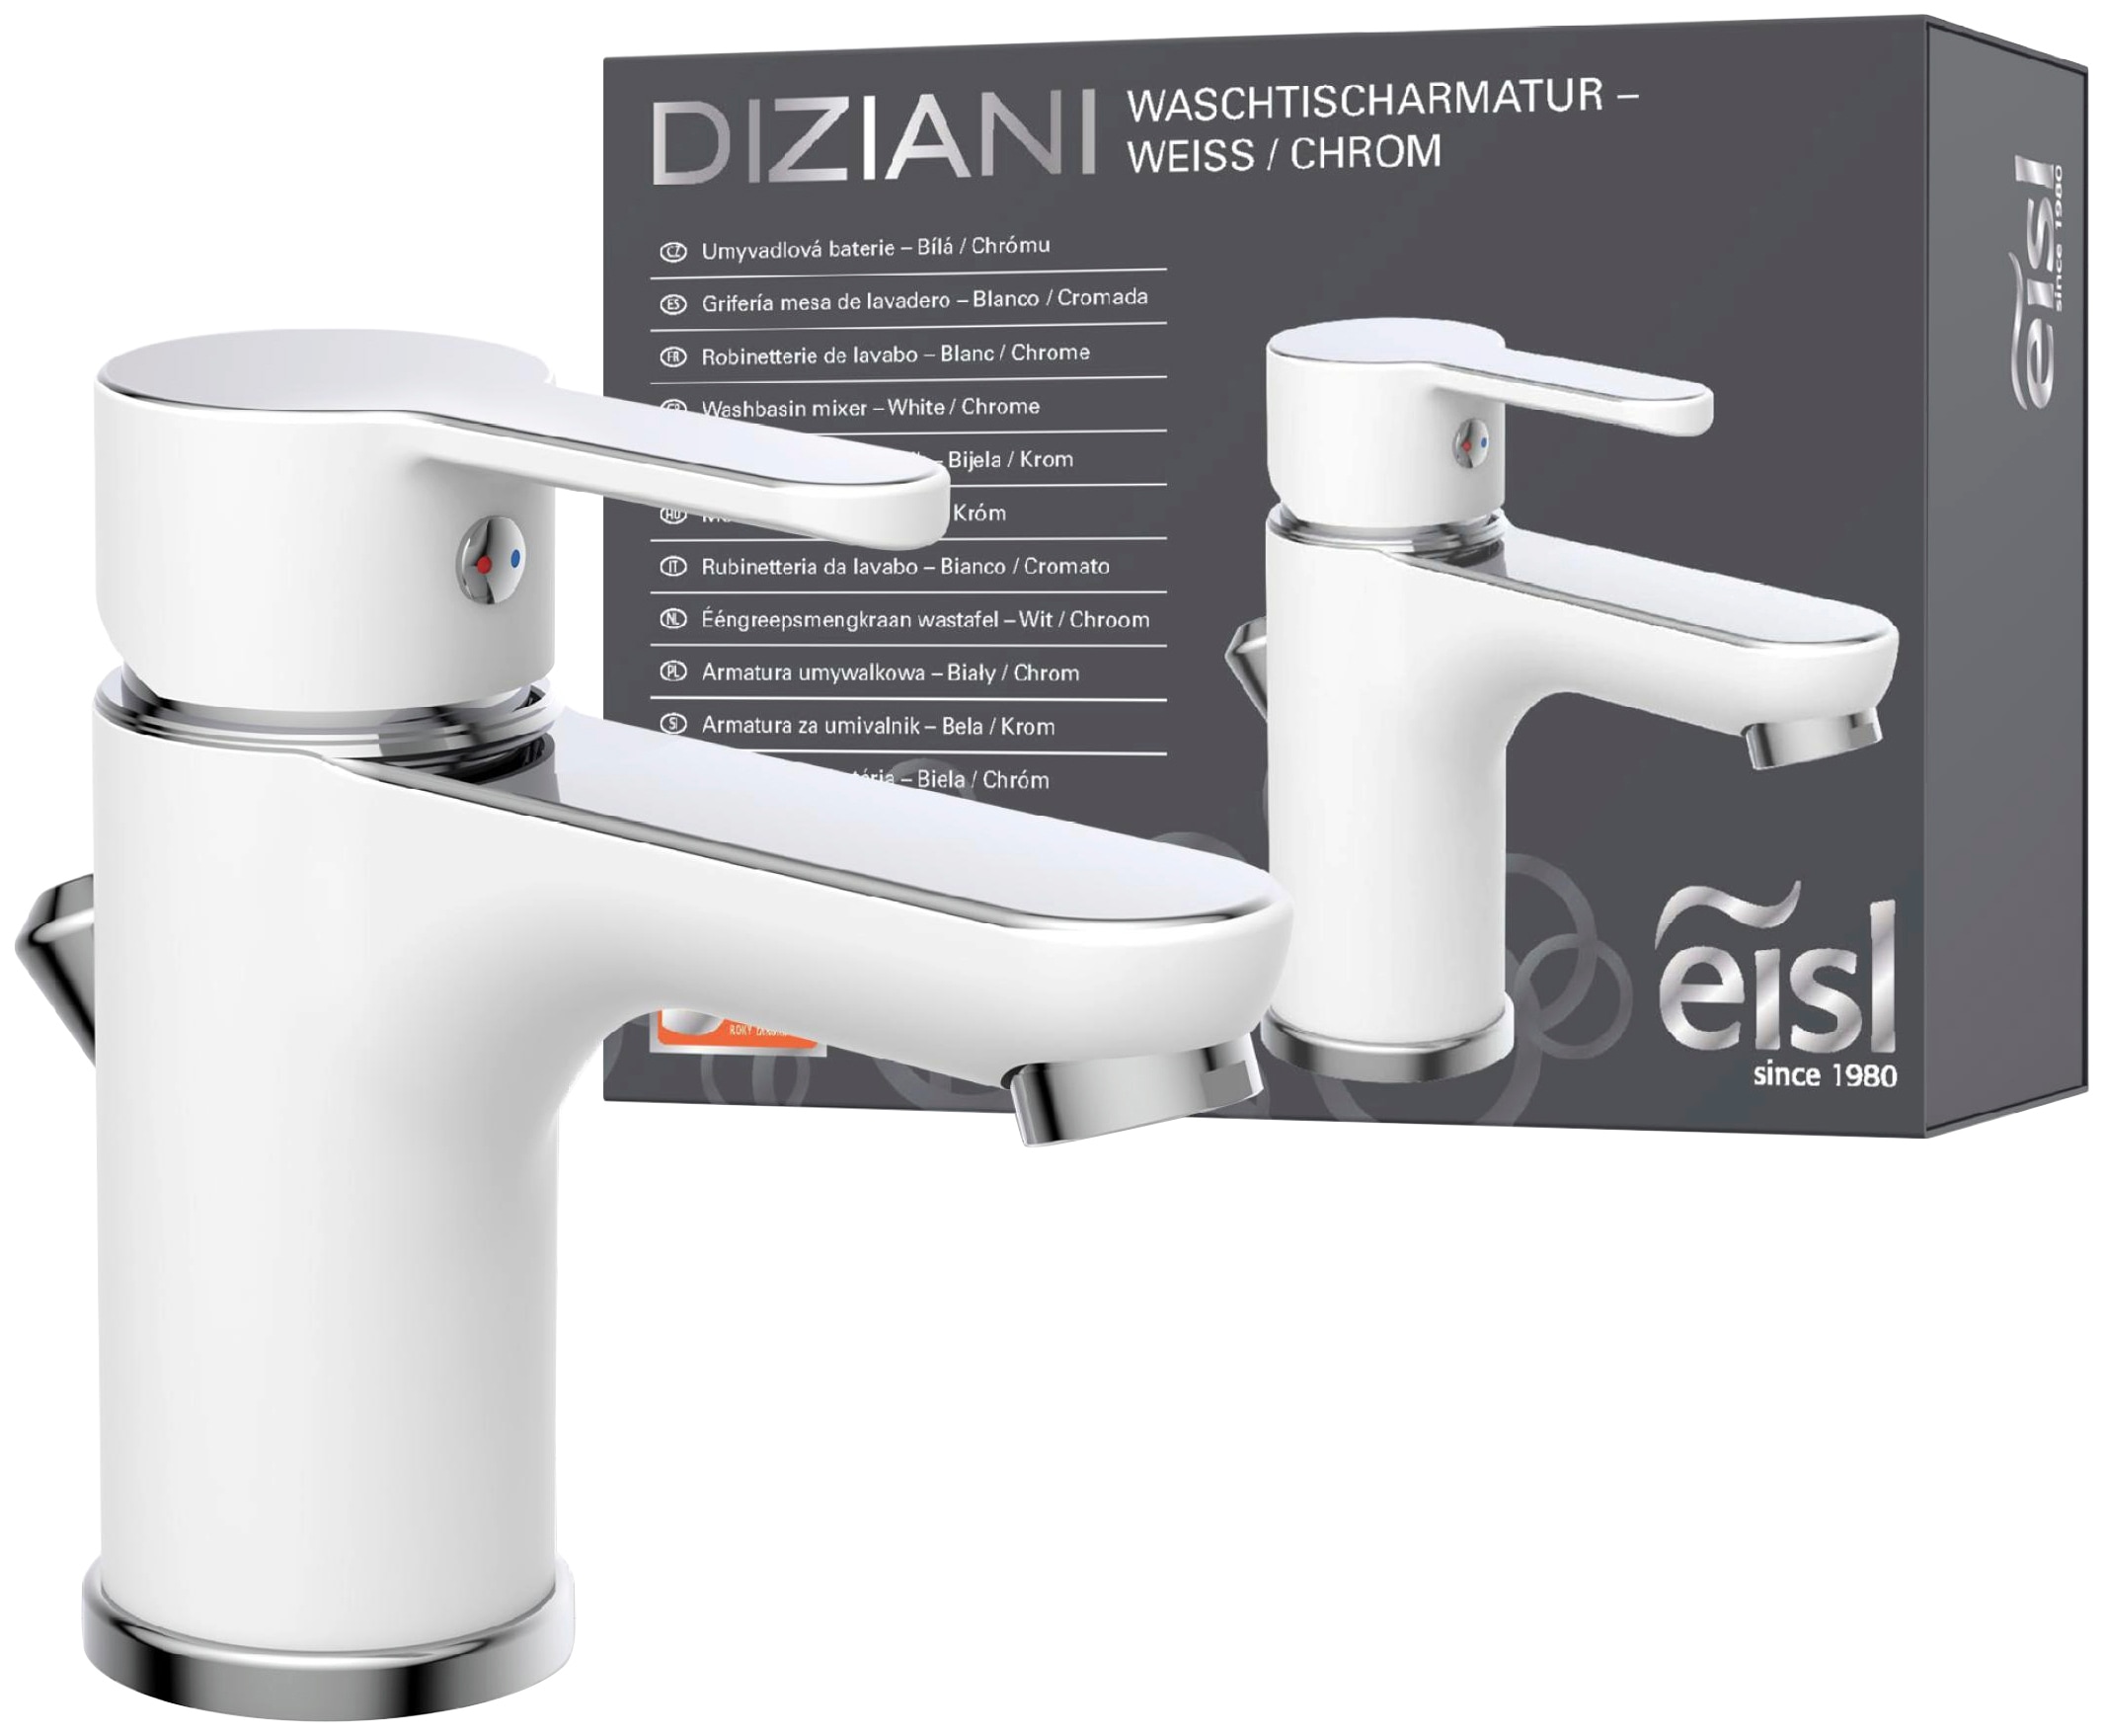 Waschtischarmatur »Diziani«, mit Zugstange, Wasserhahn mit Ablaufgarnitur, Mischbatterie